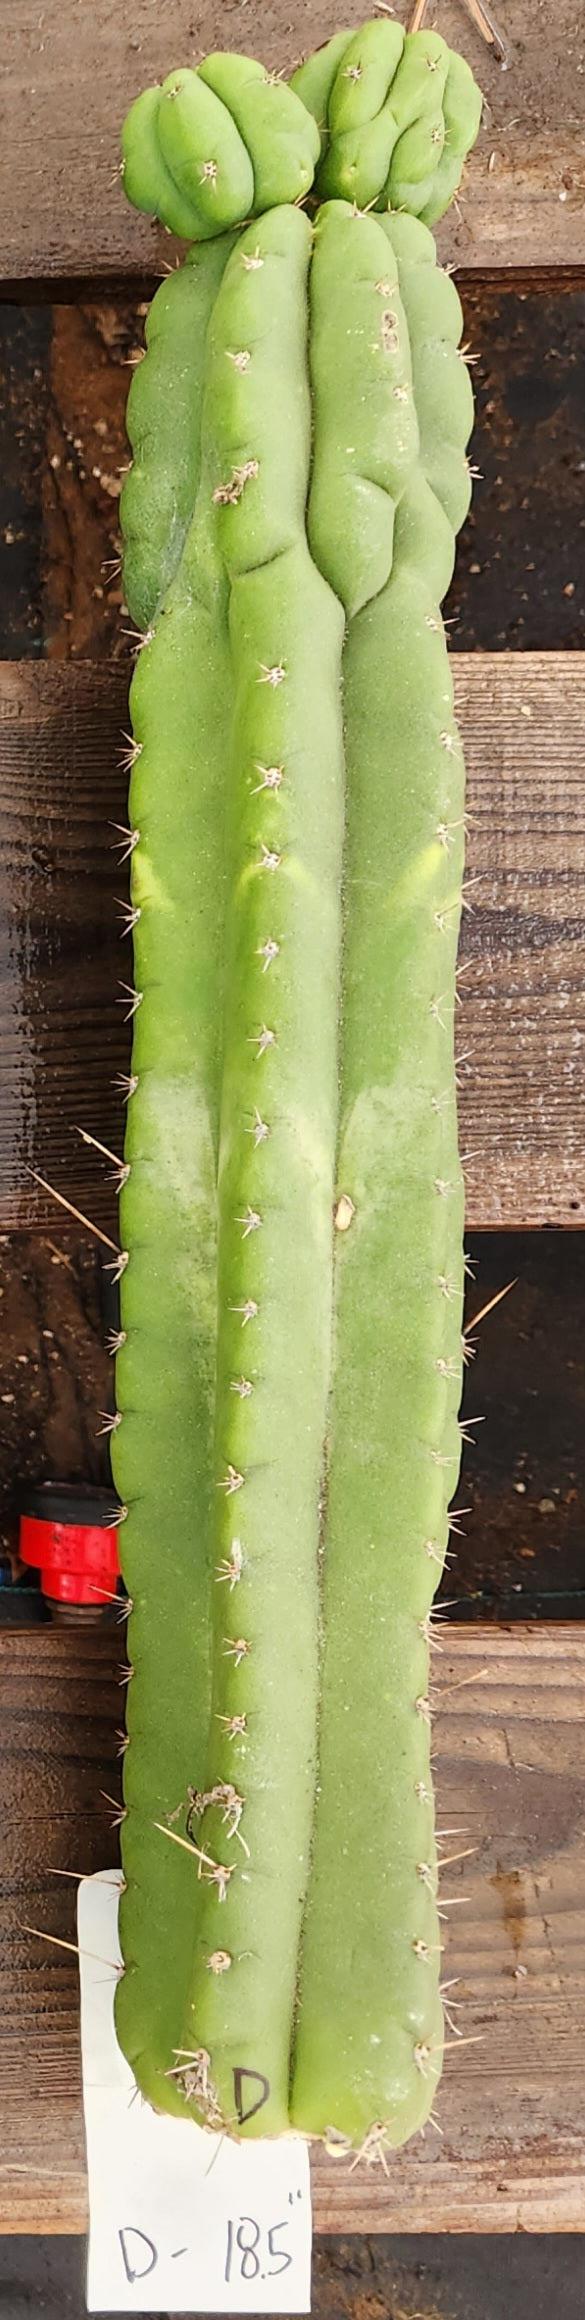 #EC267 EXACT Trichocereus Pachanoi Monstrose  TPM Cactus Cuttings